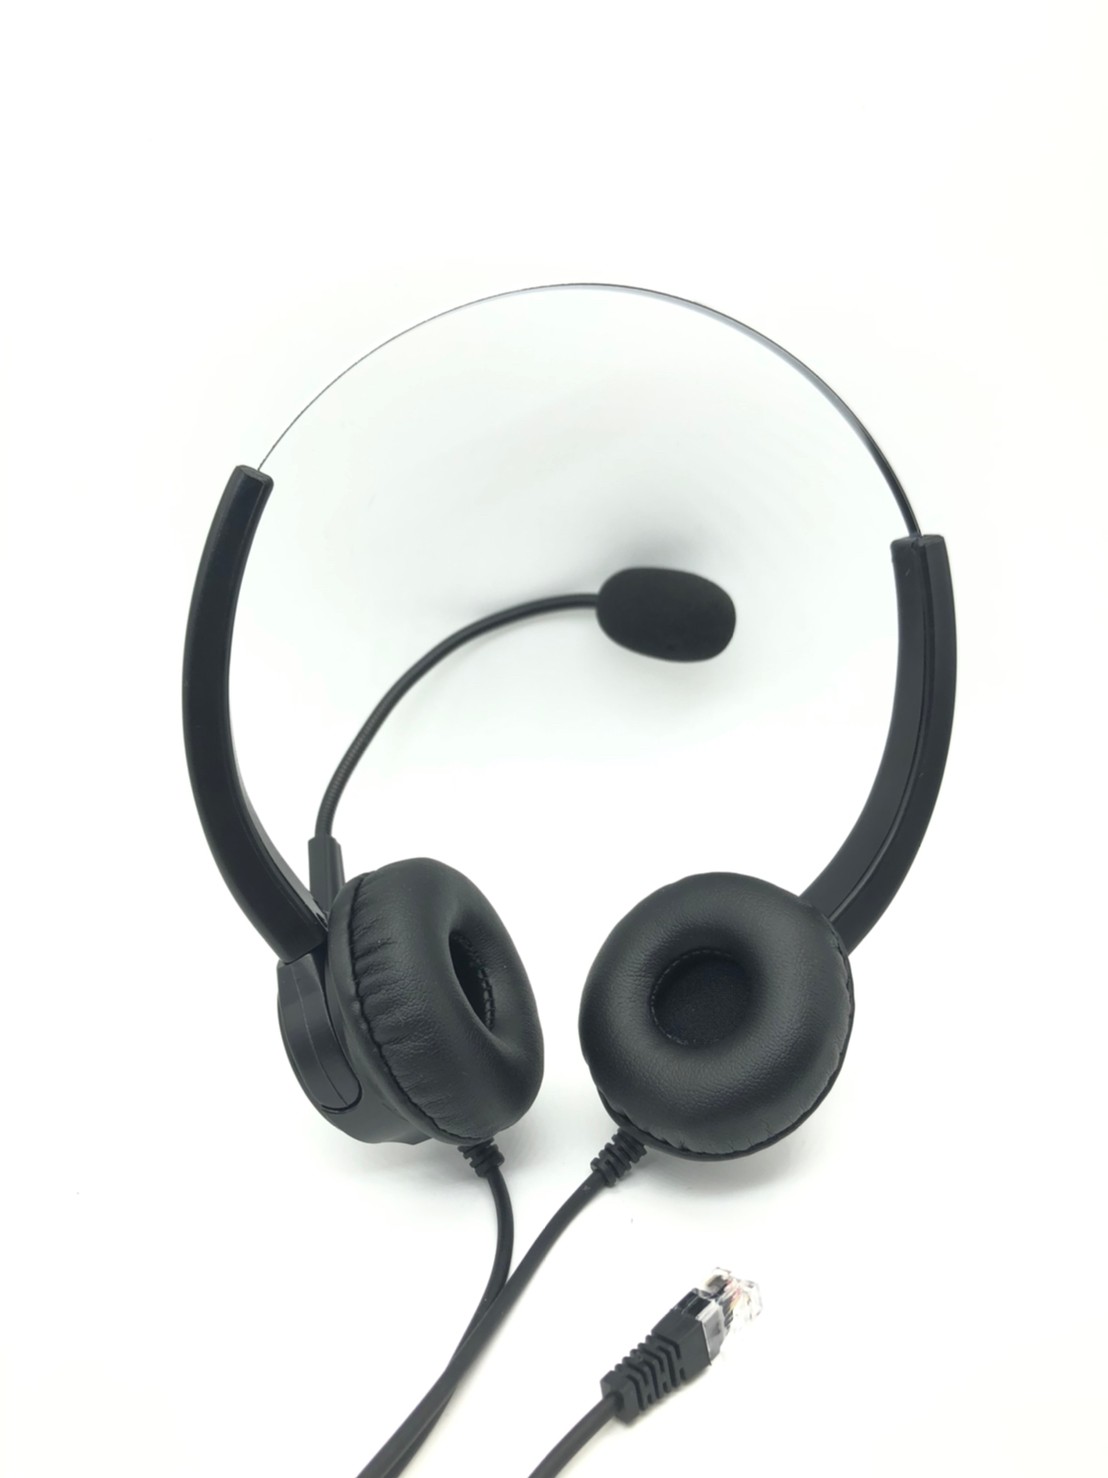 日本岩通IWATSU IX12KTS電話機專用頭戴式電話耳機麥克風 雙耳1100元 水晶頭電話耳機麥克風